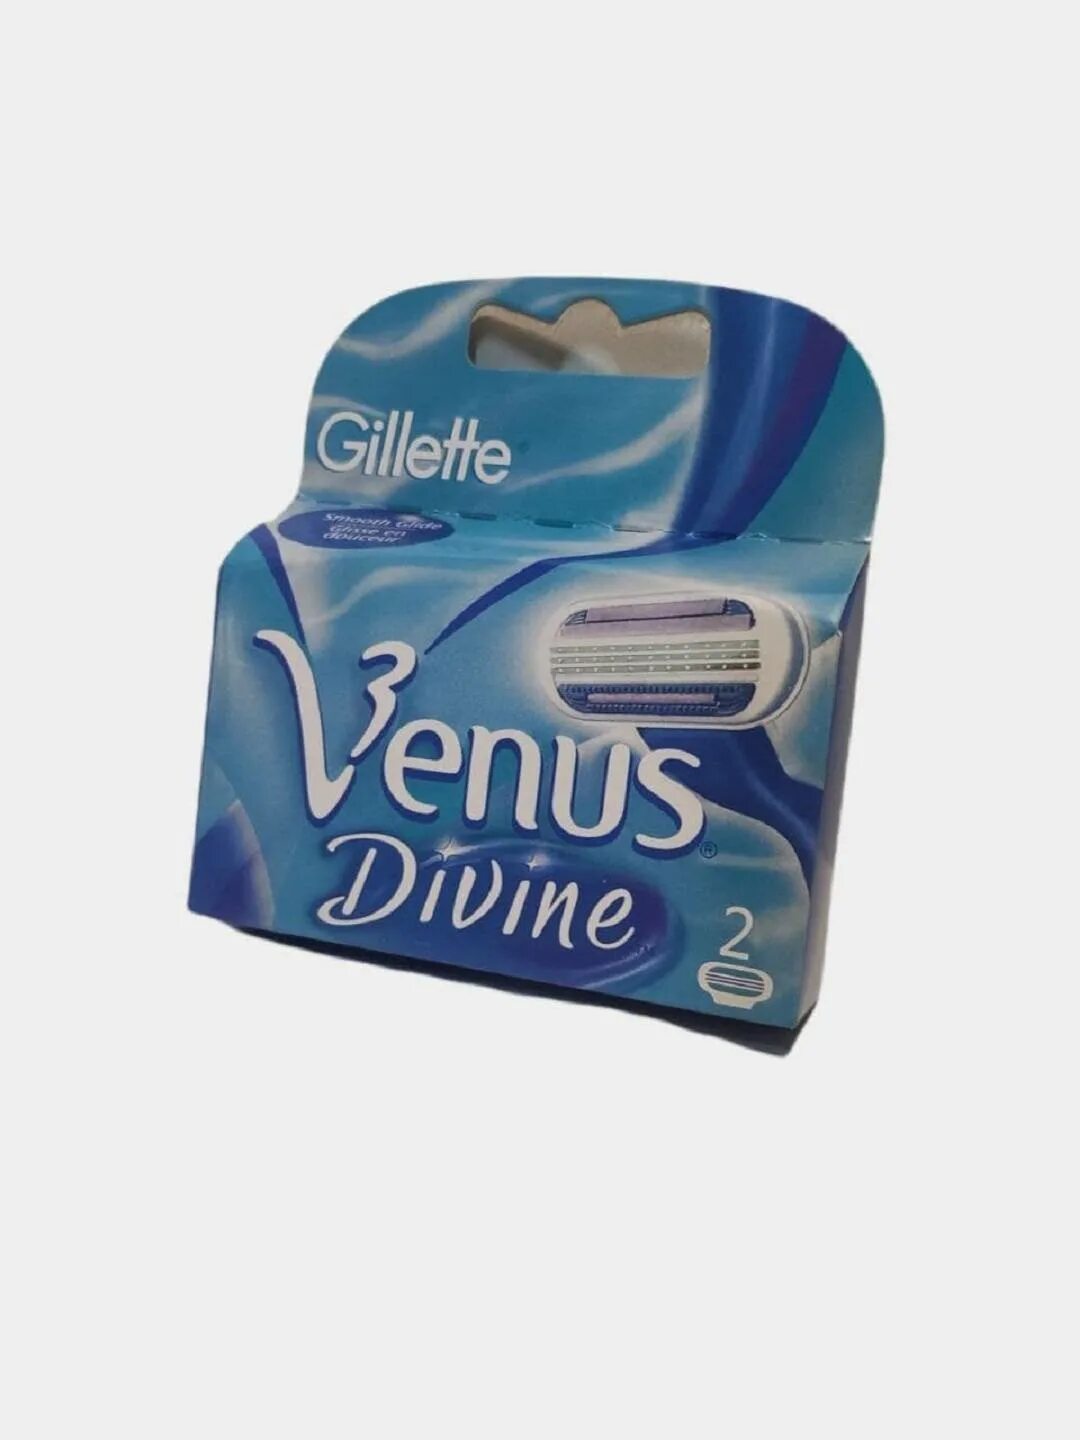 Venus кассеты купить. Сменные станки Венус Дивайн 2шт. Сменные кассеты Венус 2 шт. Кассеты Venus Divine 2шт. Кассеты Venus Divine 2шт/10 (рус).